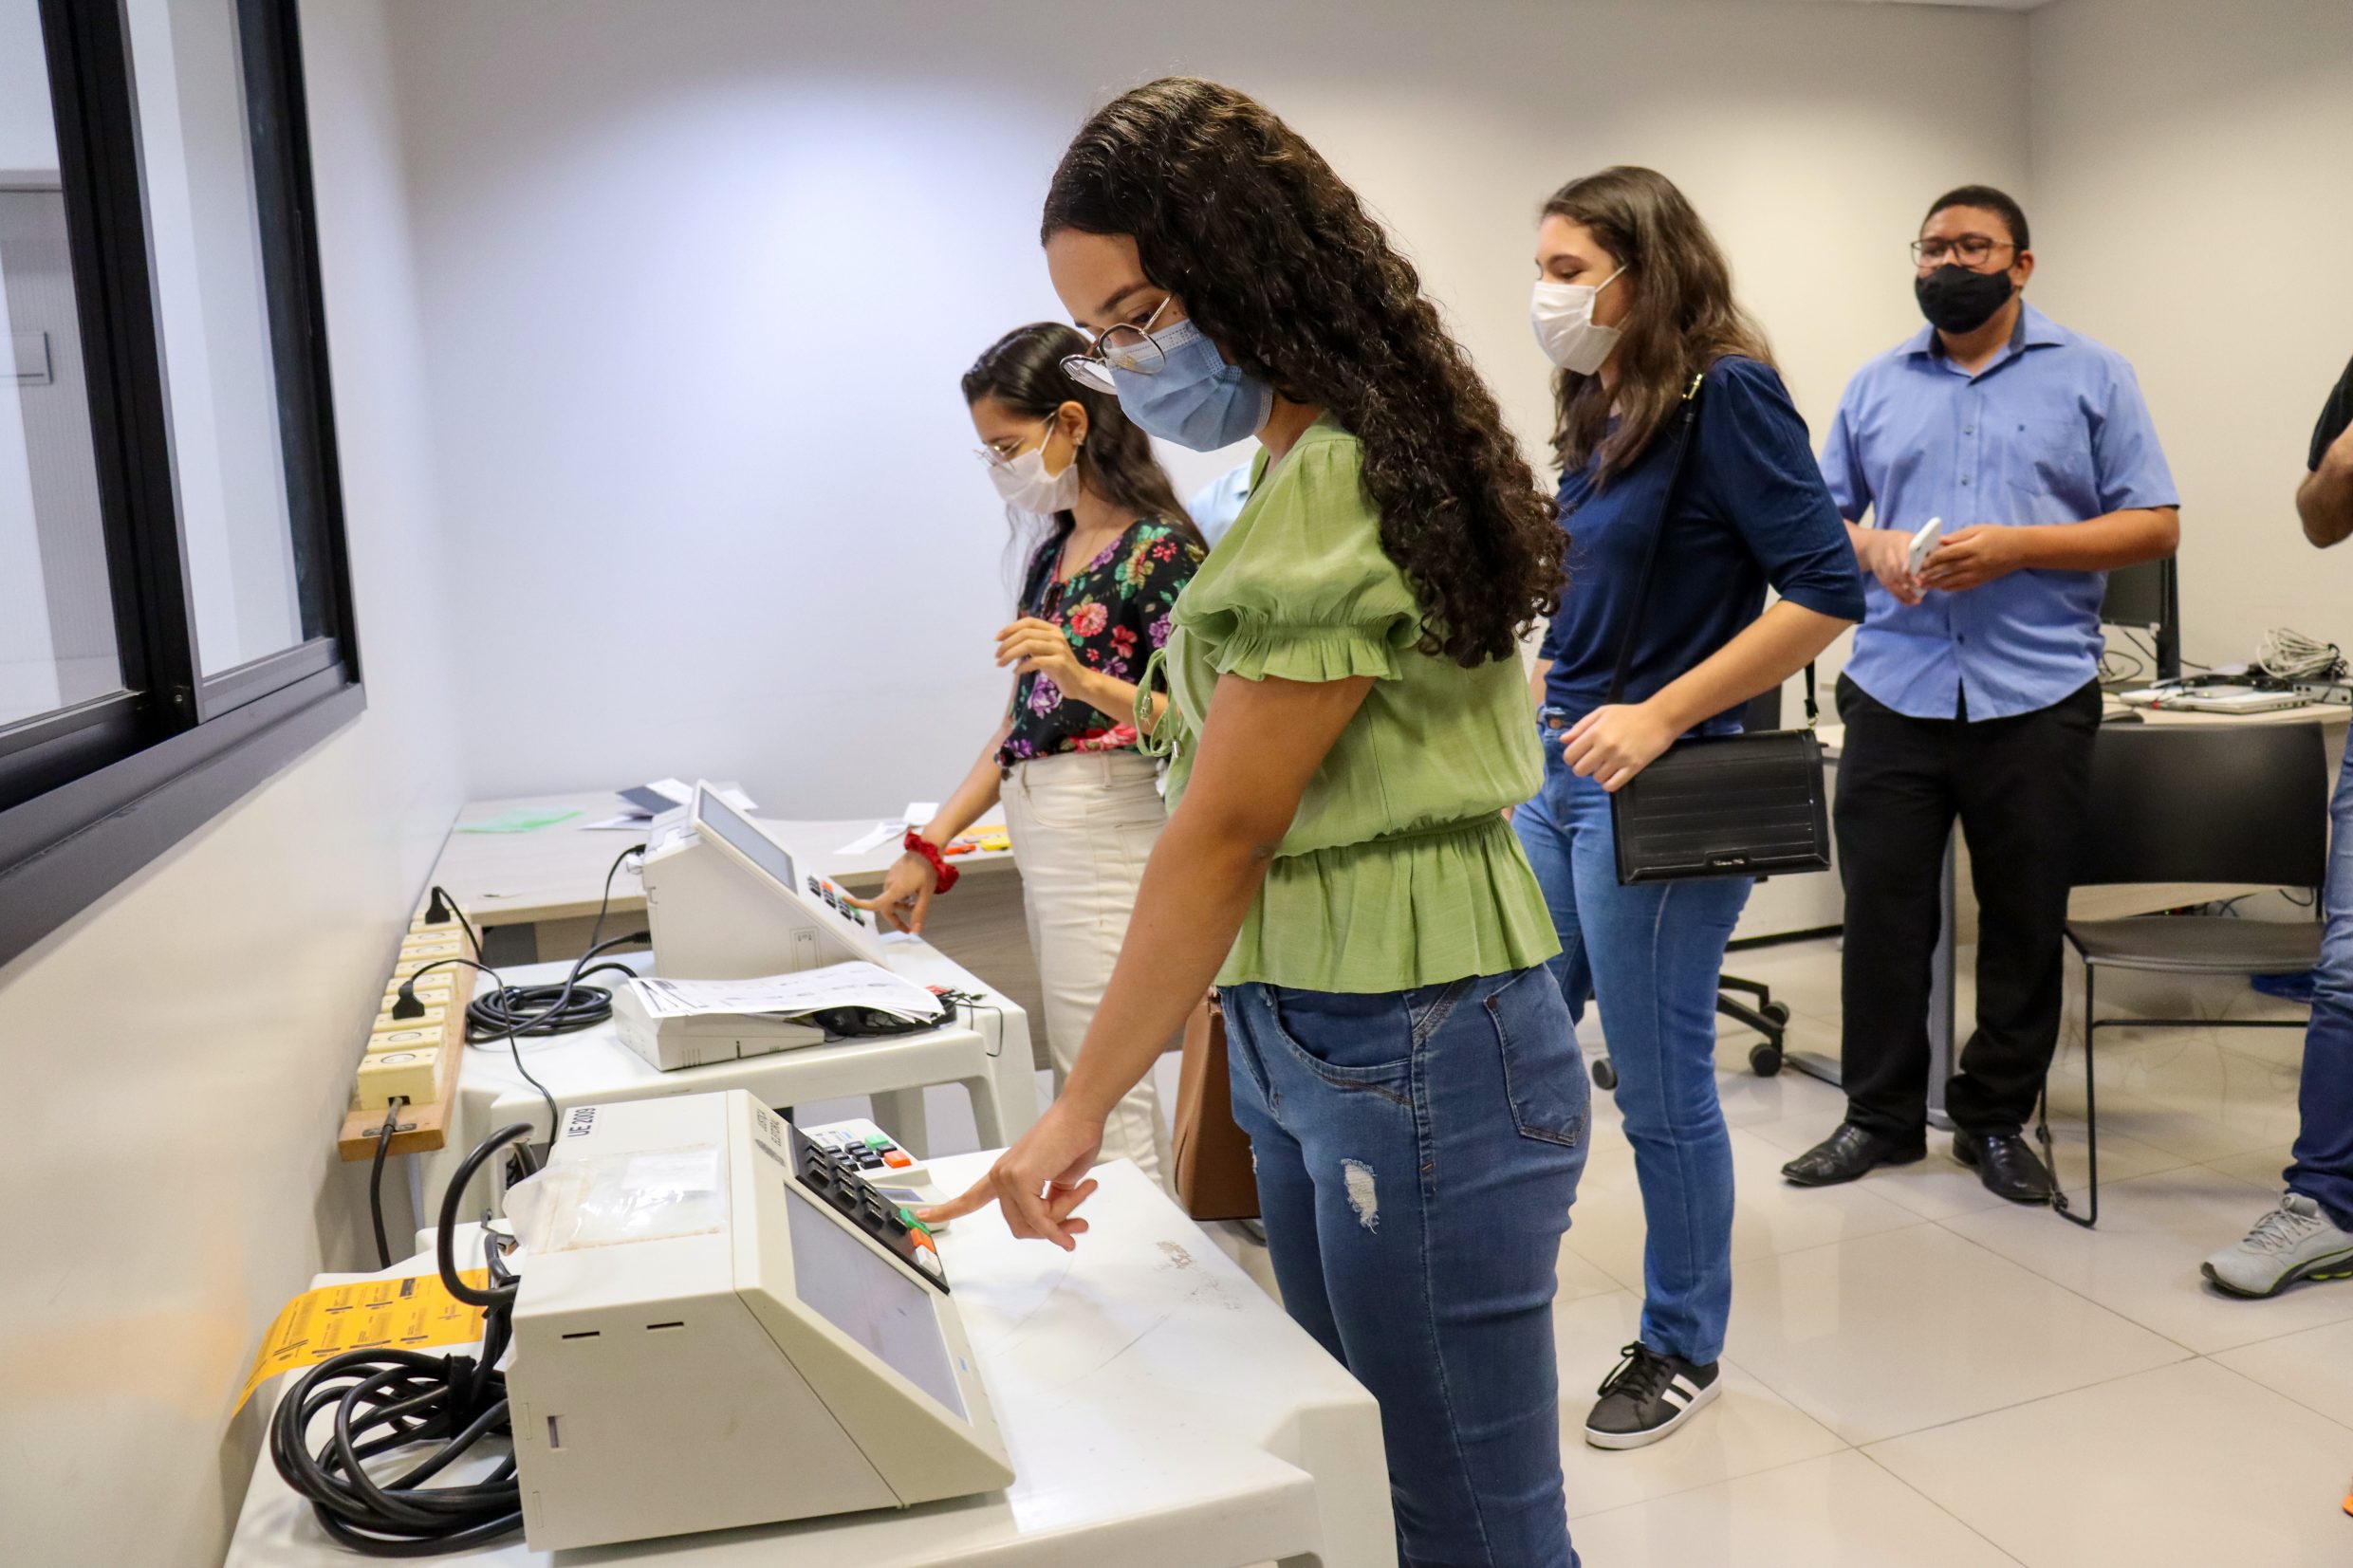 Estudantes participando de votações simuladas no TRE - Observatório das Eleições iCEV- Contra a desinformação e fakenews no Sistema Eleitoral Brasileiro